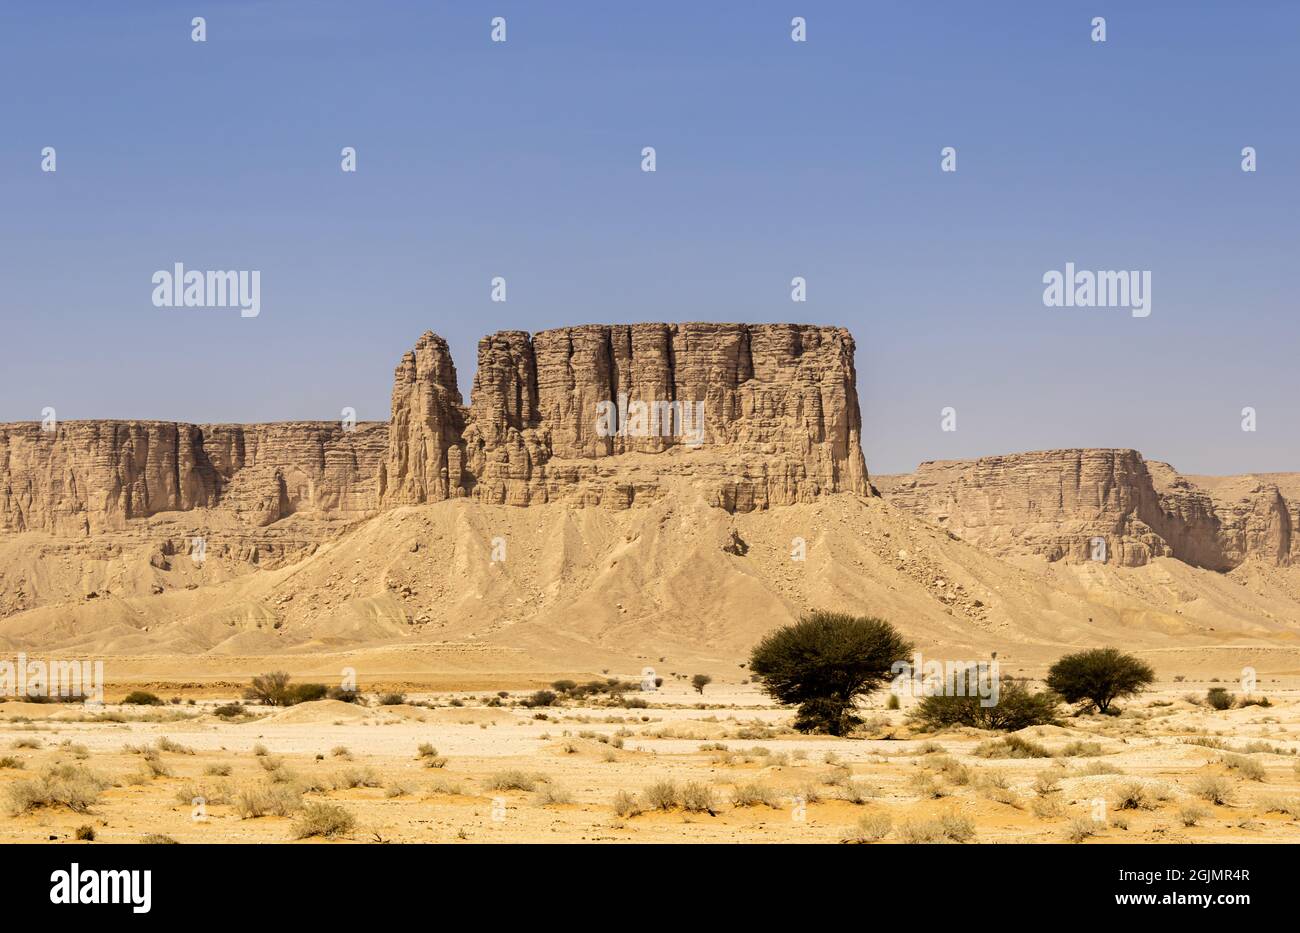 Sandstone formations of Jabal Tuwaiq near Riyadh, Saudi Arabia Stock Photo